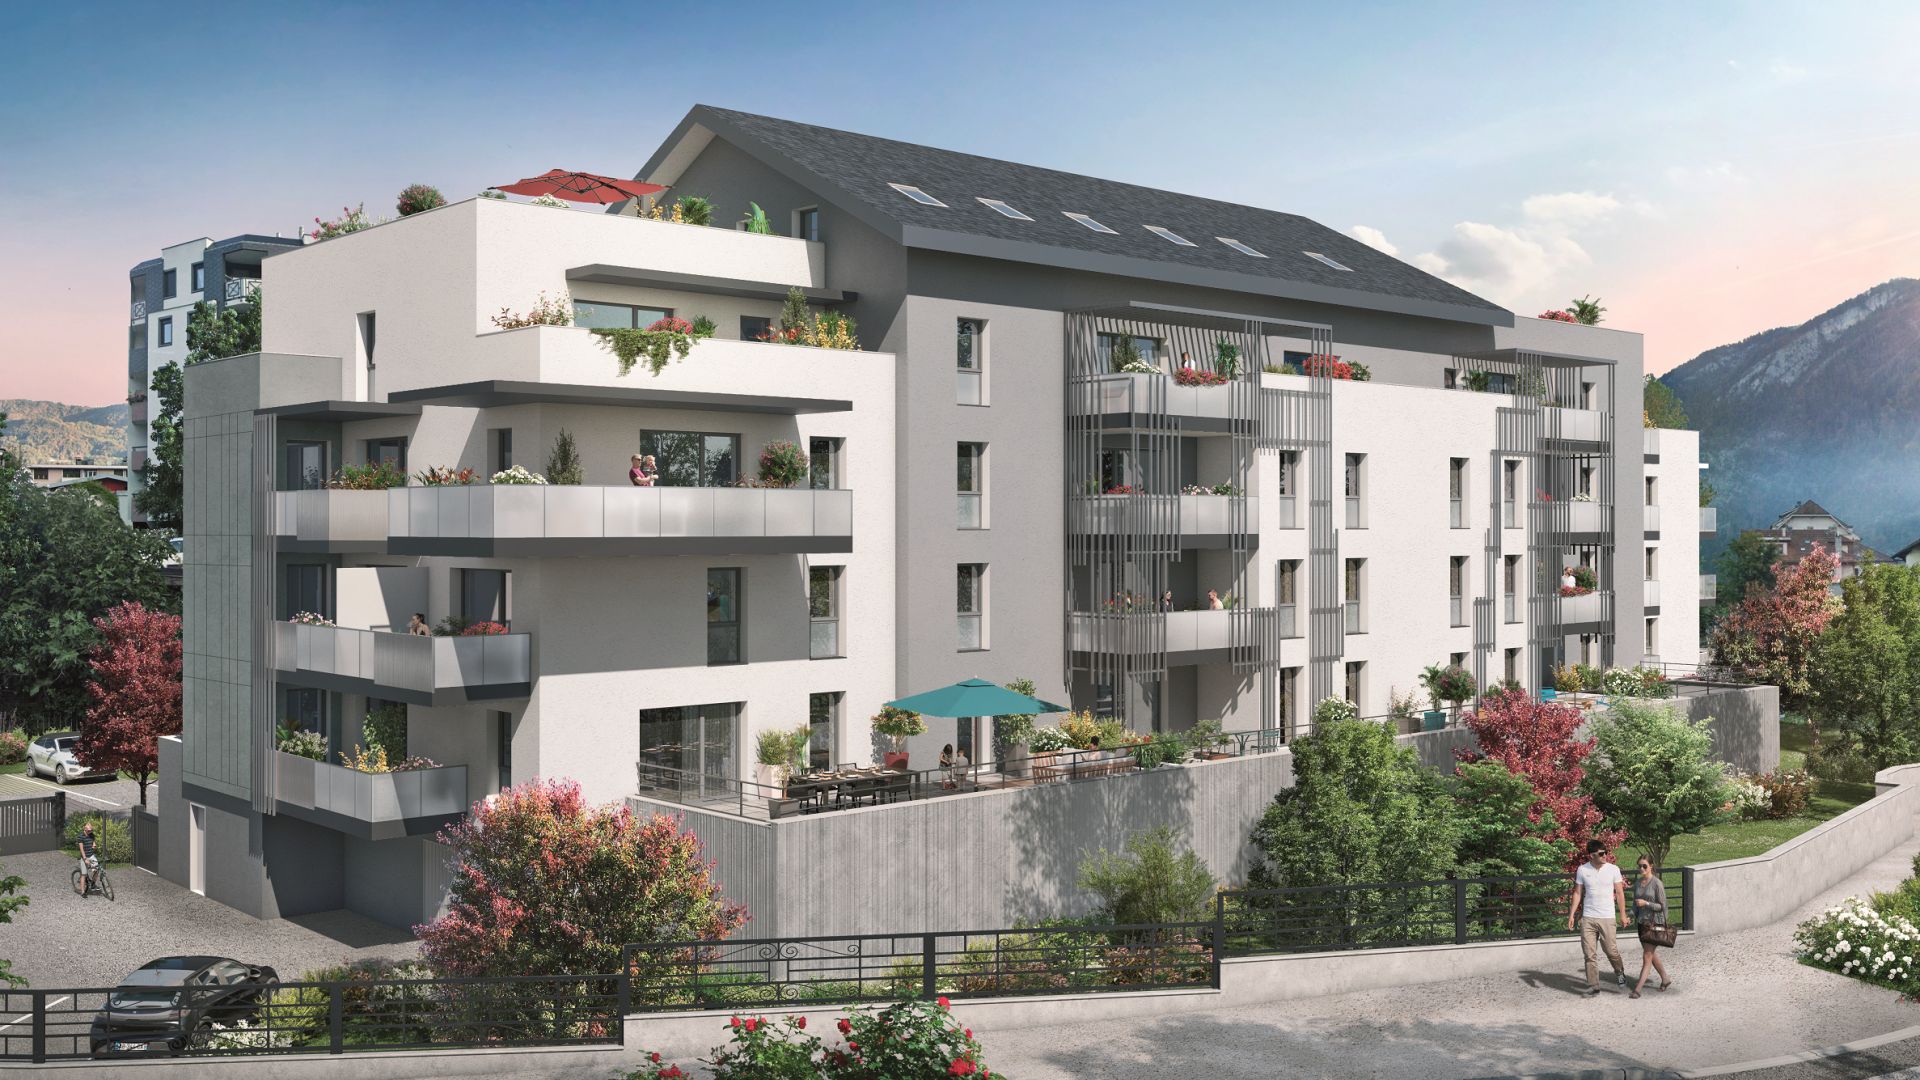 Greencity immobilier - achat appartements neufs du T2 au T5 - Résidence Le 1848 - 74300 Cluses